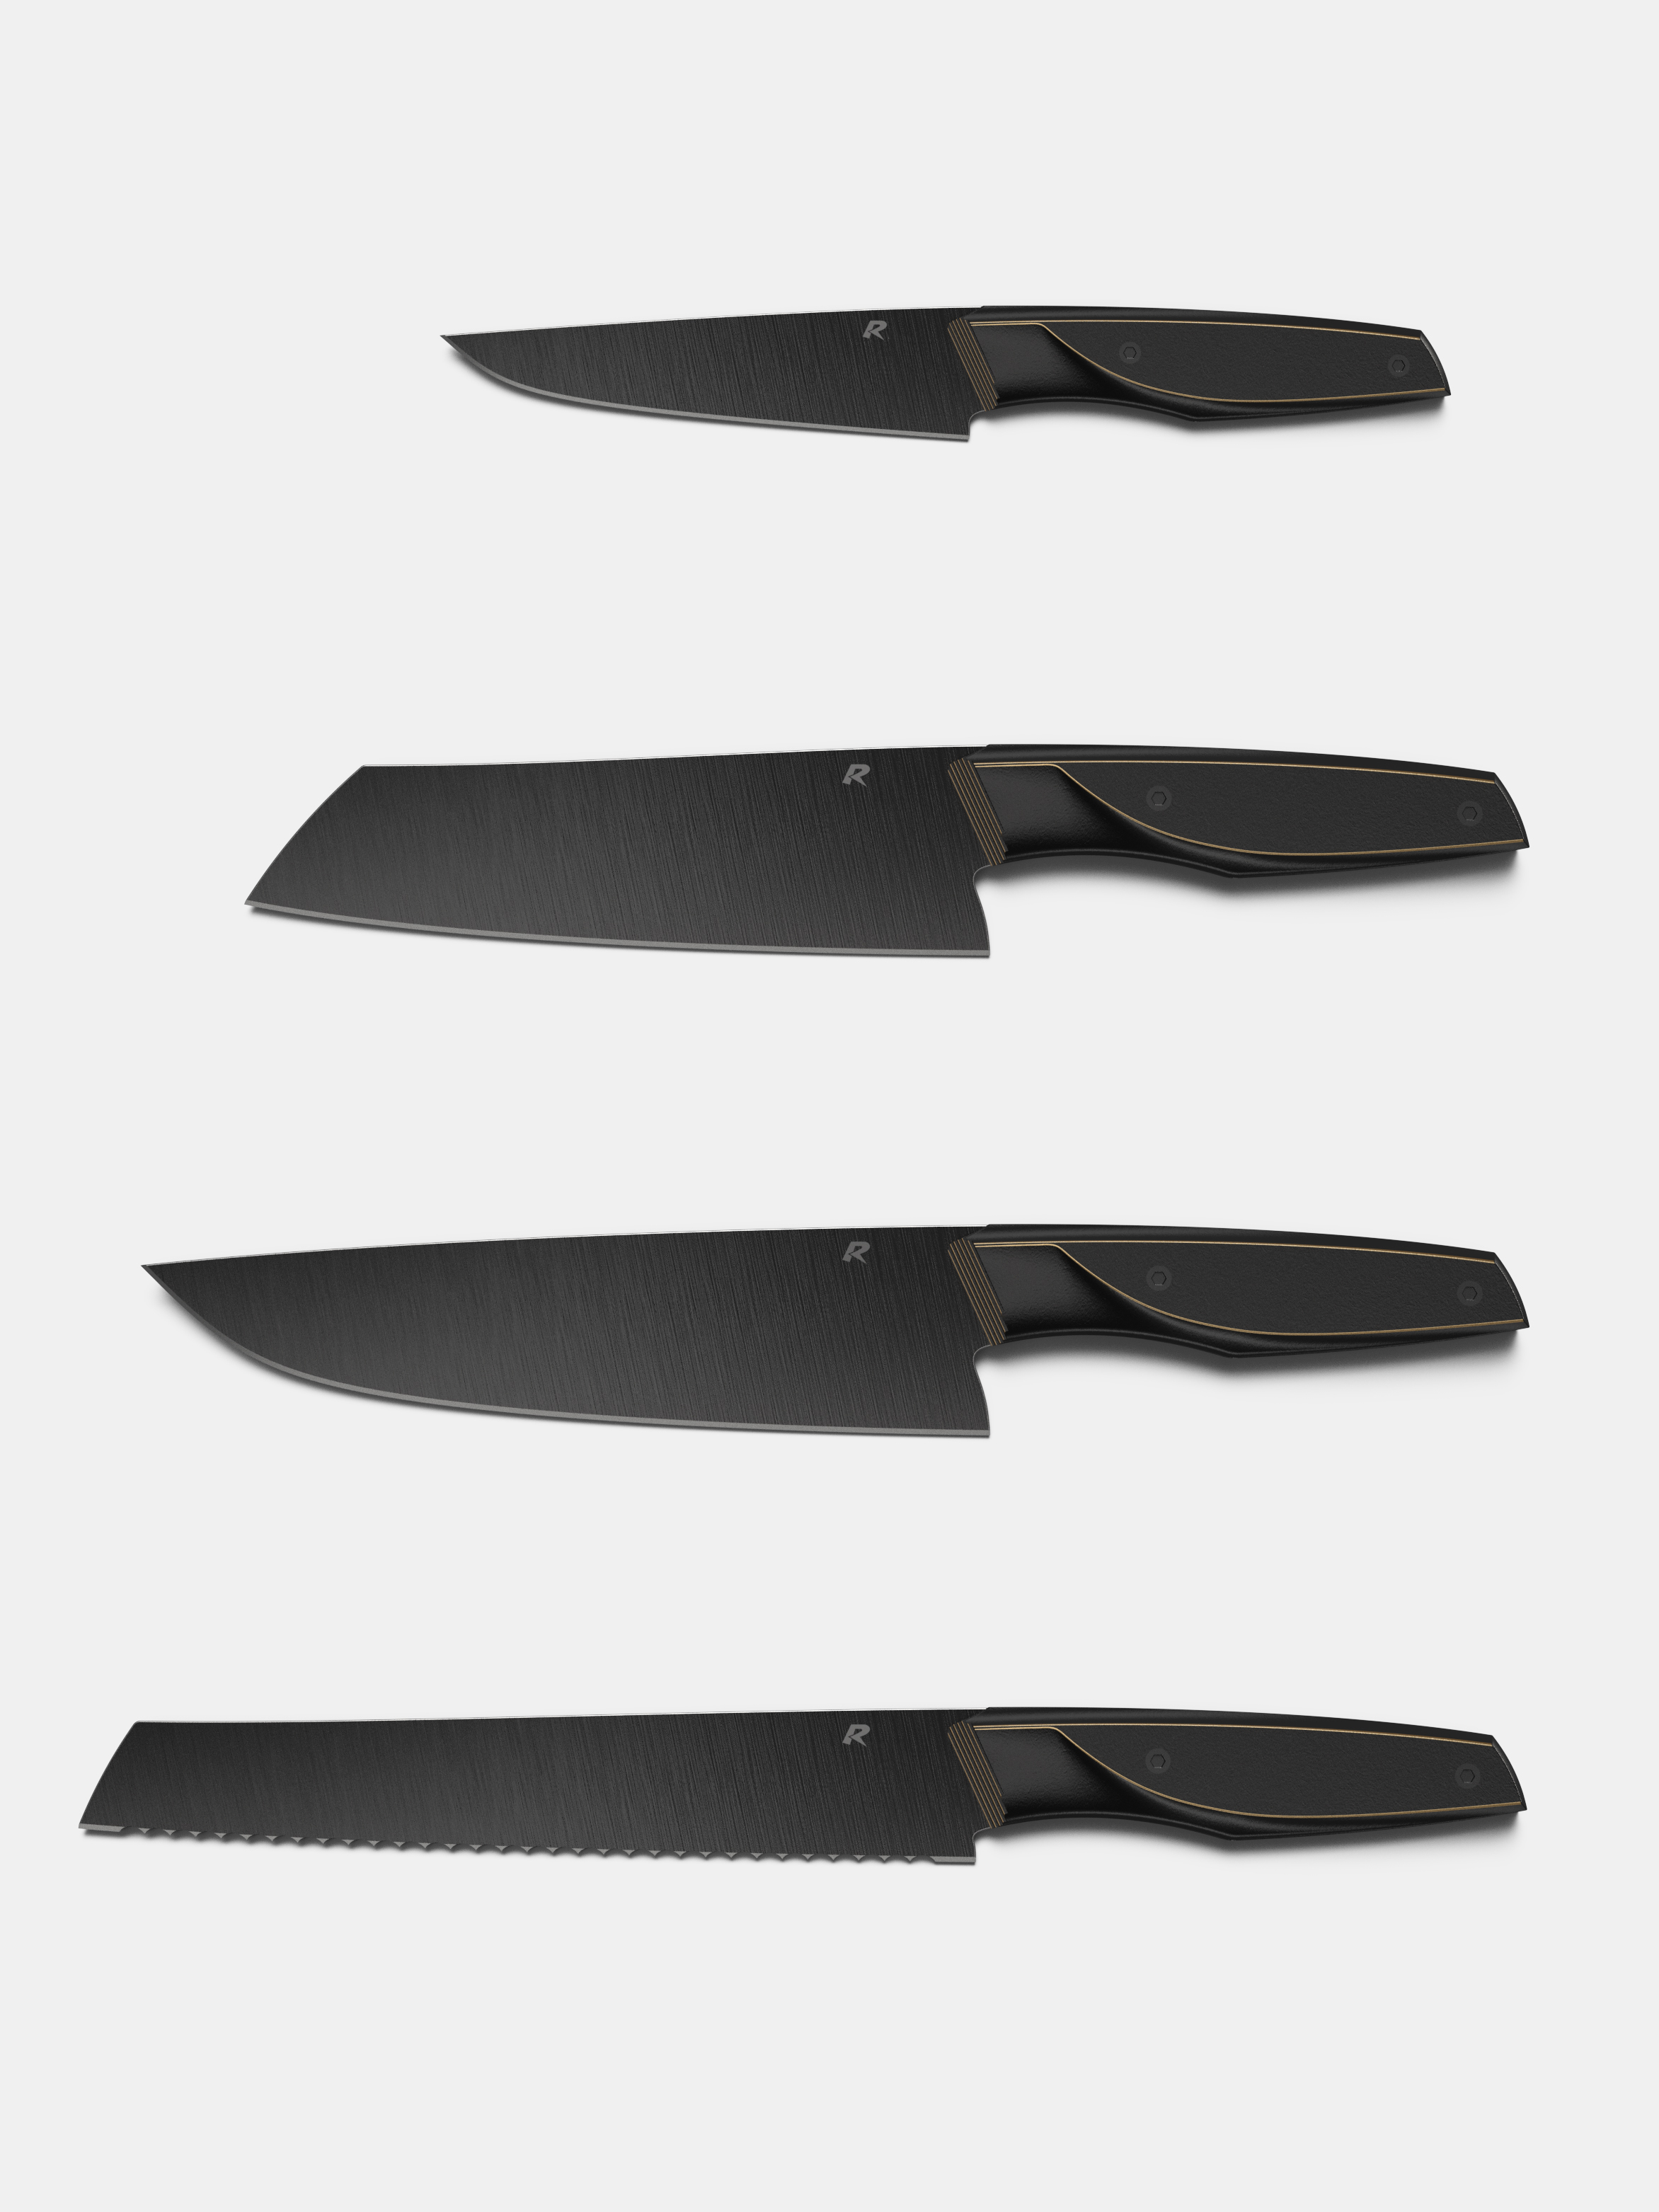 Meteorite Knives